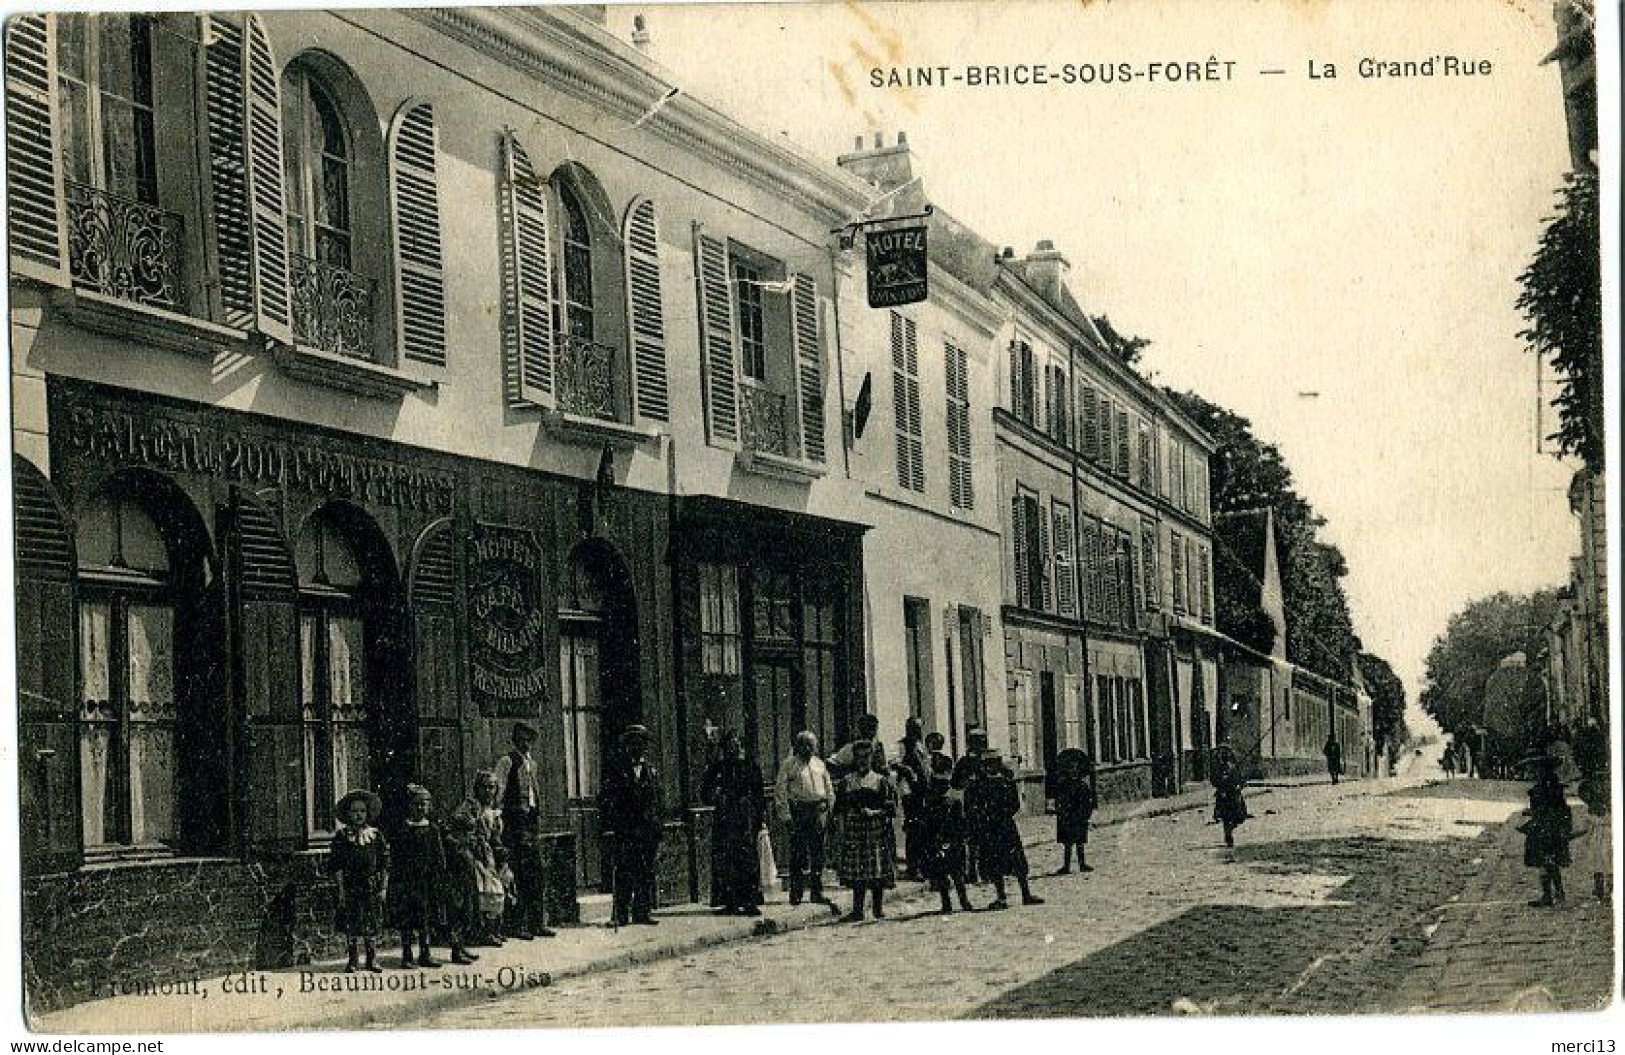 SAINT-BRICE-SOUS-FORET (95) – La Grand’Rue. Hôtel Du Lion D’Or. Editeur J. Frémont, Beaumont-sur-Oise. - Saint-Brice-sous-Forêt